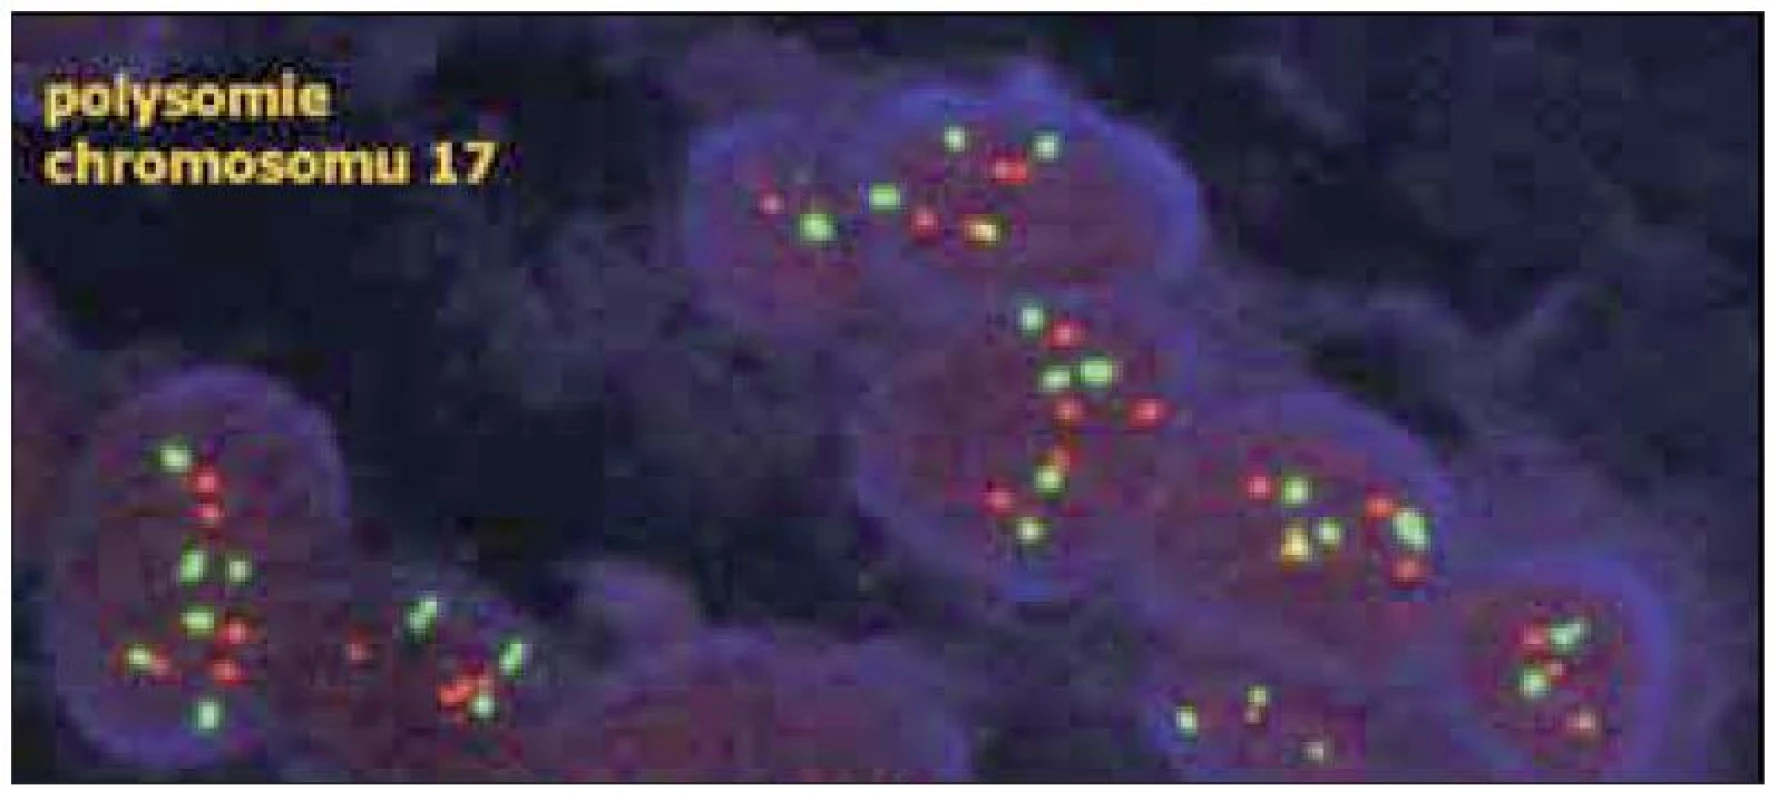 V případě polysomie chromozomu 17 je zvýšen nejen počet červených signálů genu HER2, ale také počet červených centromerických signálů – poměr mezi však zůstává obdobný, jako u normálních buněk.(dle www.patologie.info.cz